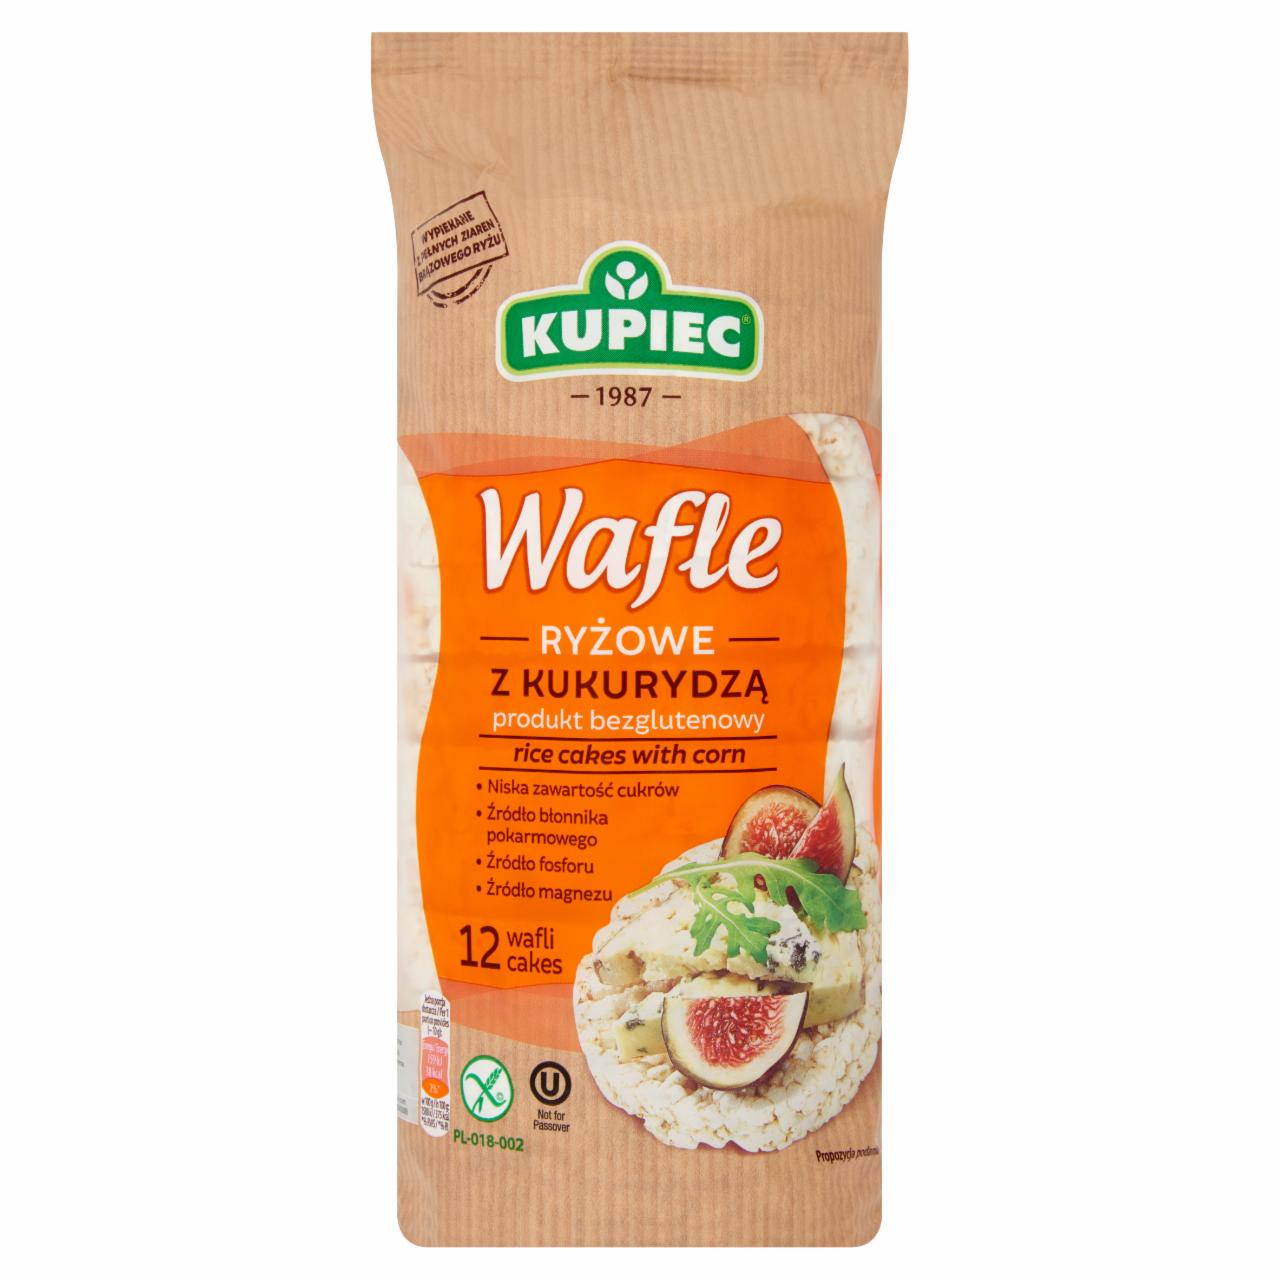 Képek - Kupiec Wafle gluténmentes puffasztott rizskeksz kukoricával 120 g